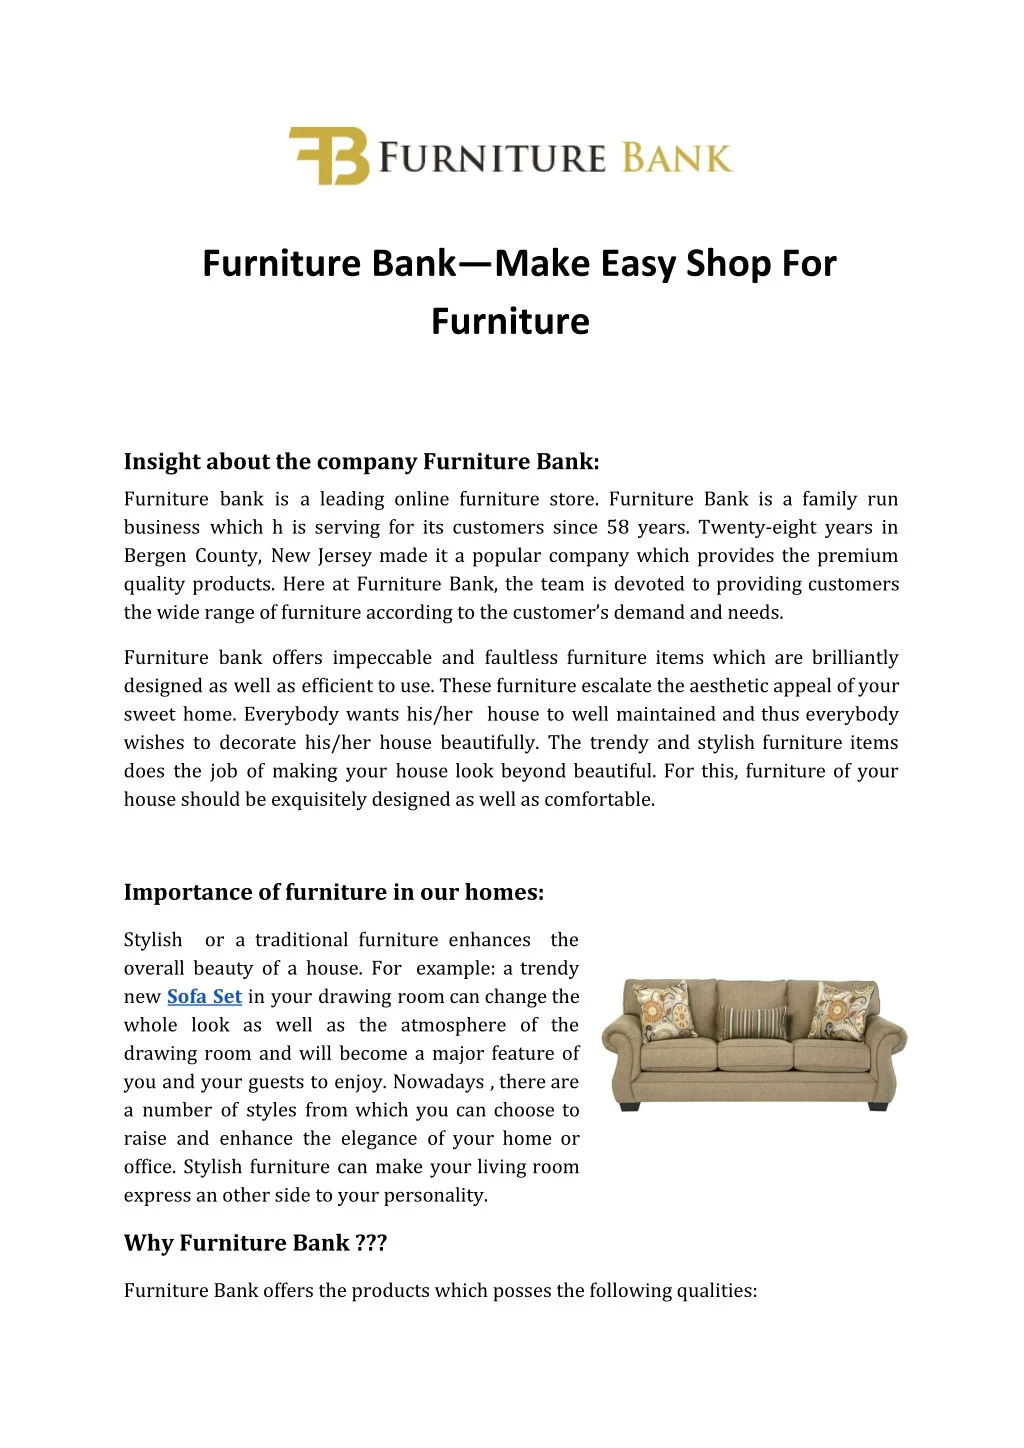 furniture bank make easy shop for furniture